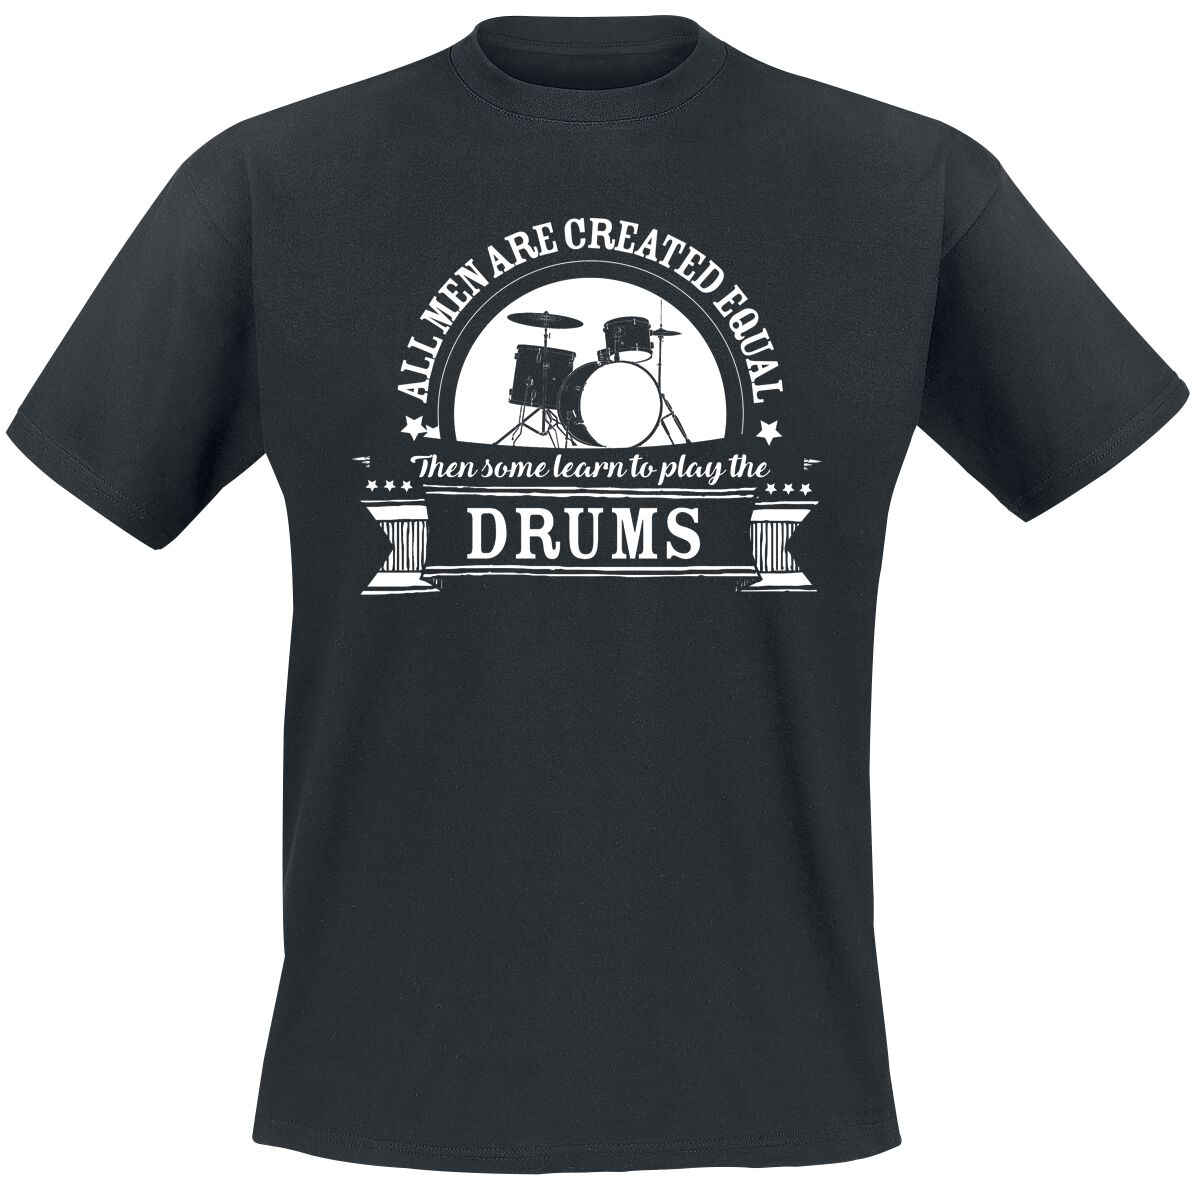 Sprüche T-Shirt - All Men Are Equal Then Some learn To Play The Drums - L bis 5XL - für Männer - Größe 5XL - schwarz